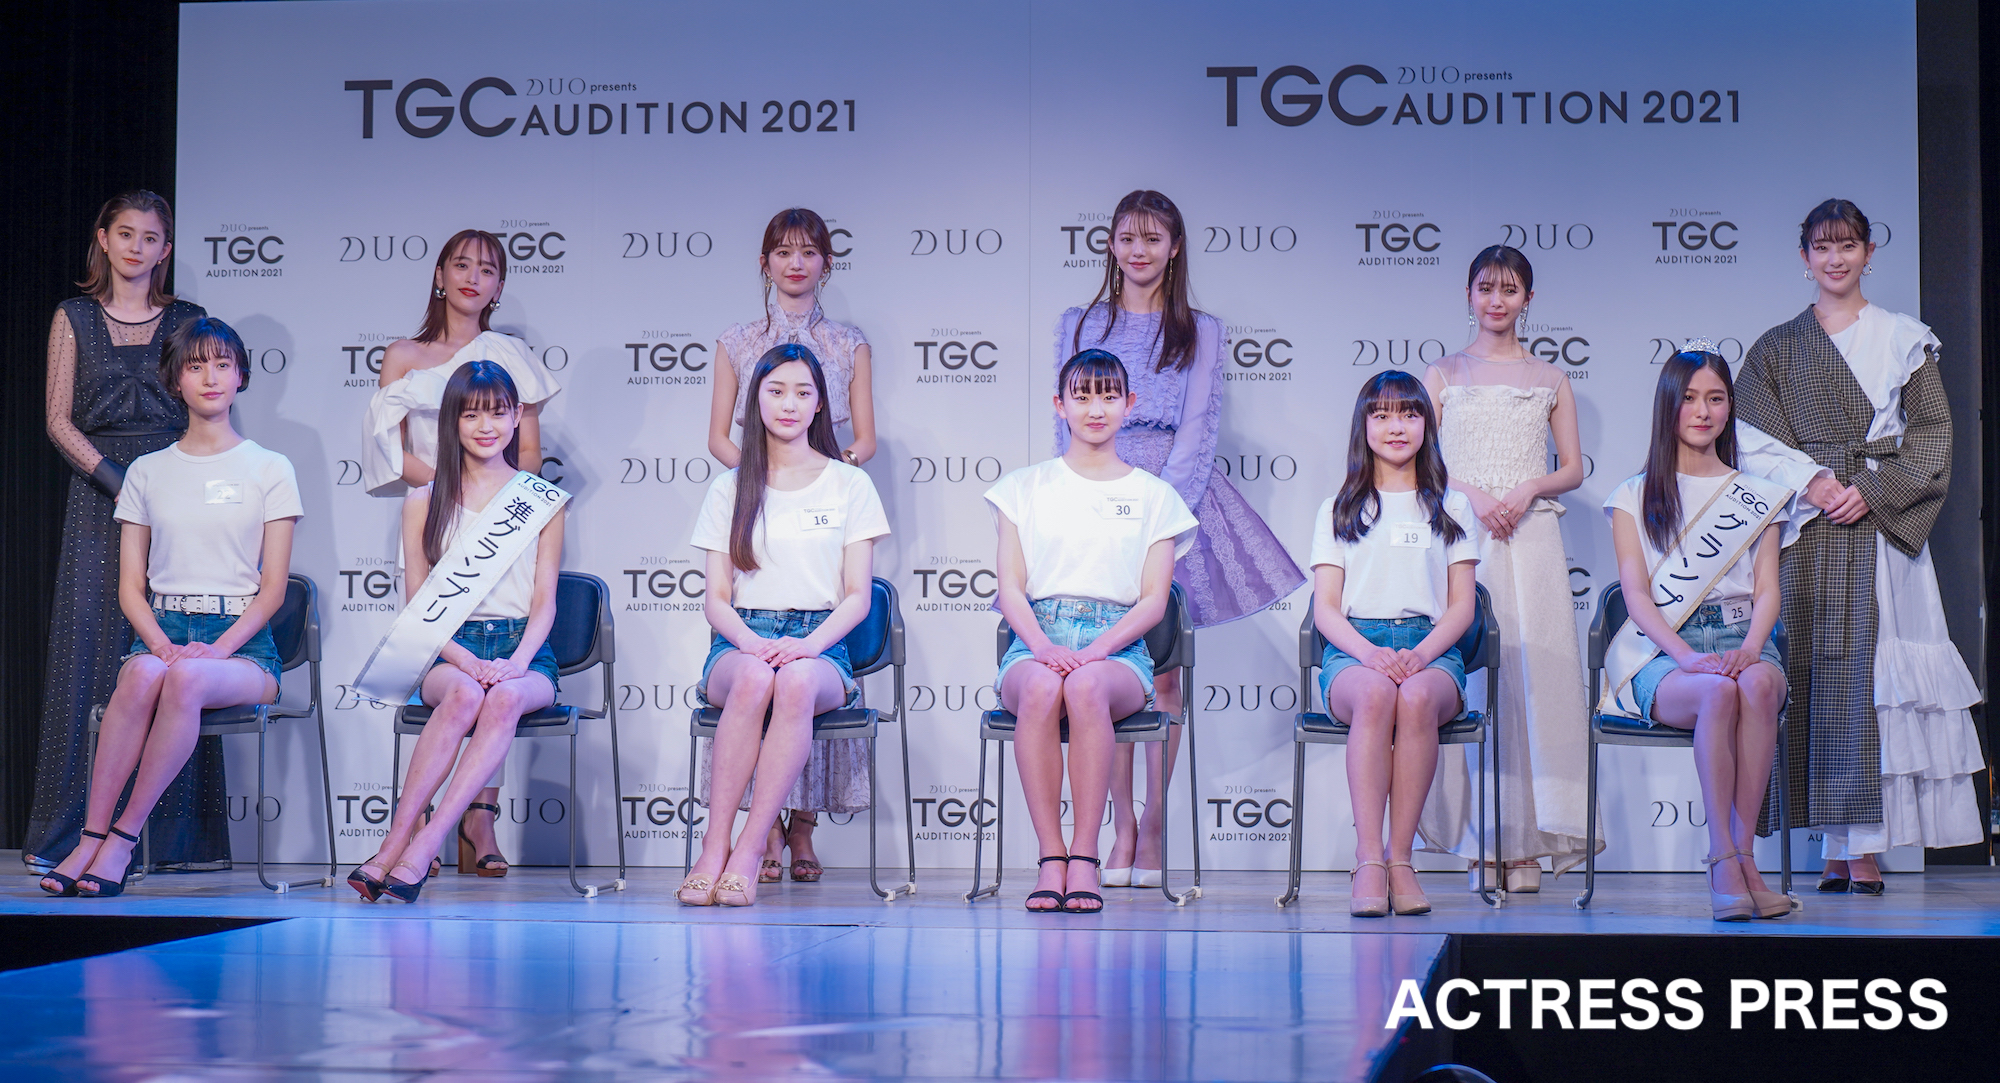 「TGC AUDITION 2021」のファイナリストと各芸能事務所から登壇したタレント（2021年4月18日、ベルエポック美容専門学校 第二校舎にて。撮影：ACTRESS PRESS編集部）